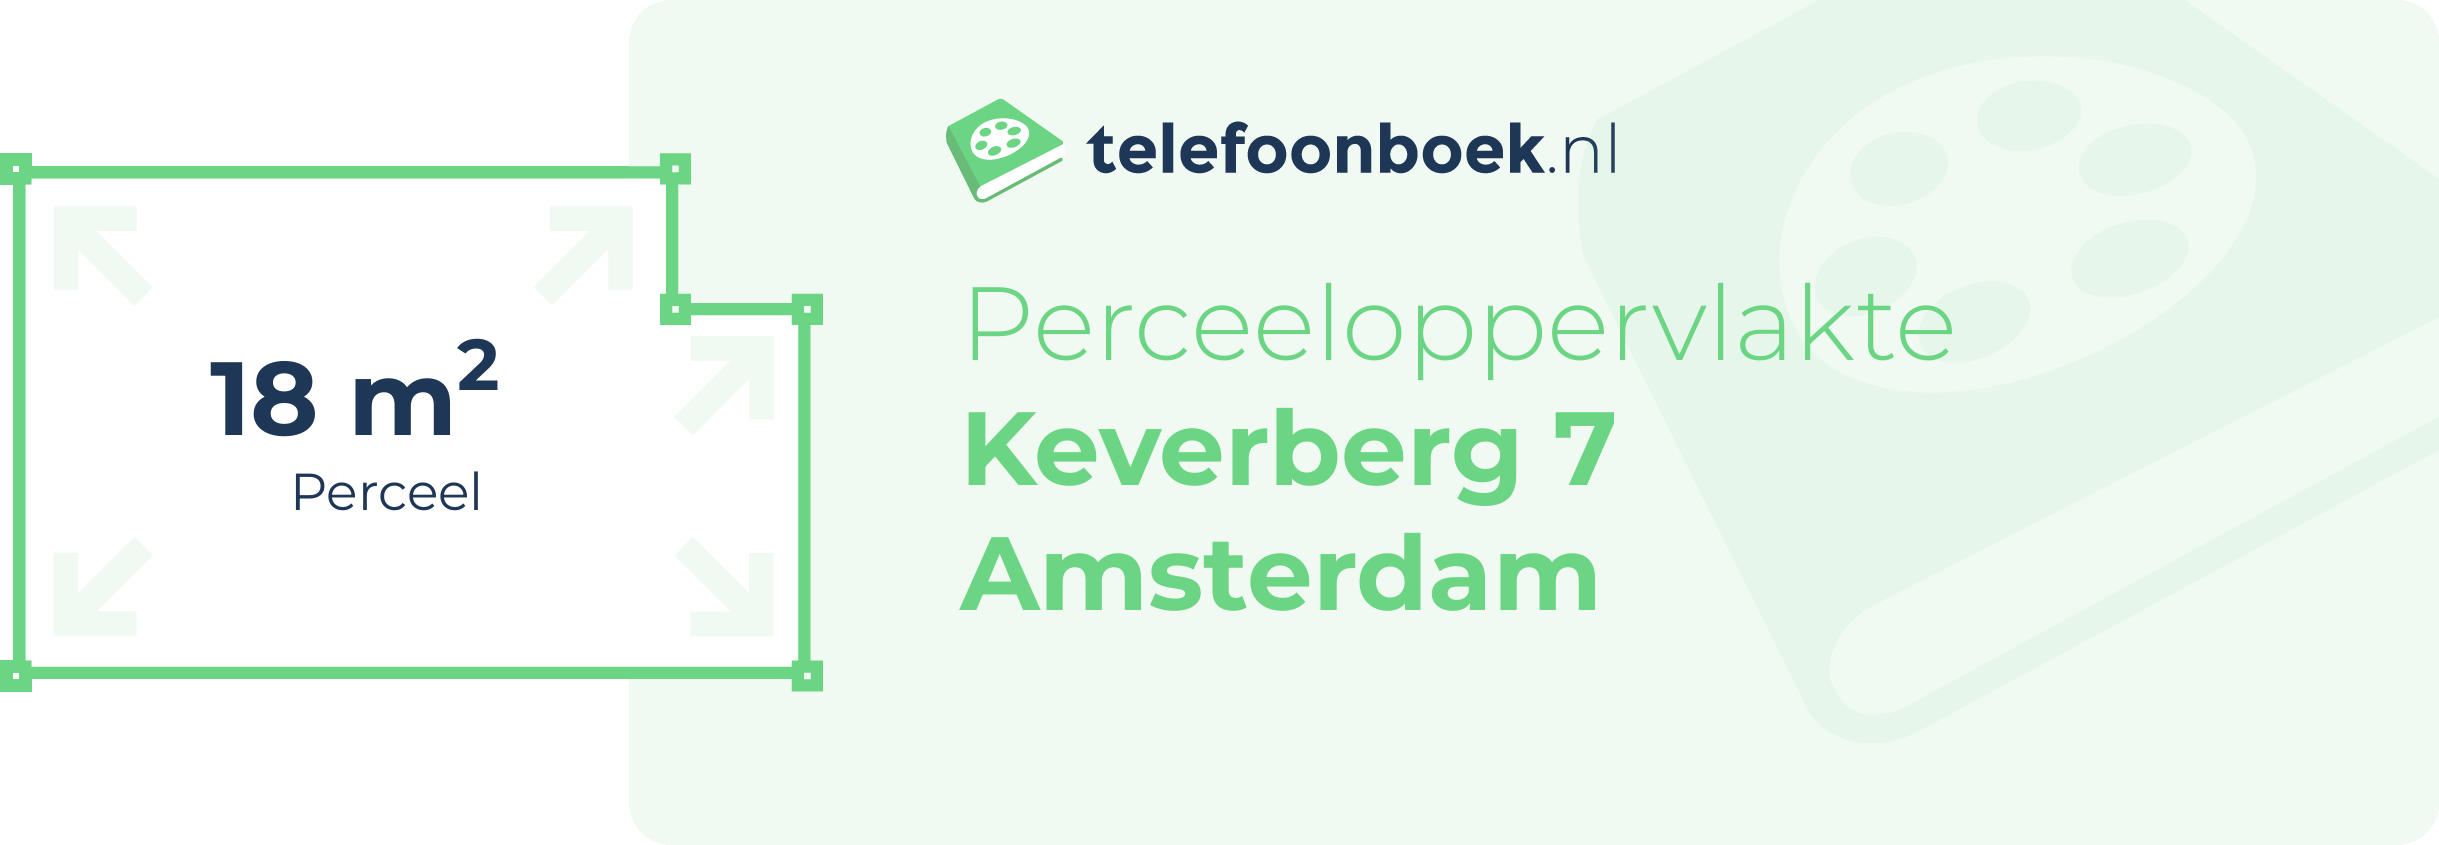 Perceeloppervlakte Keverberg 7 Amsterdam